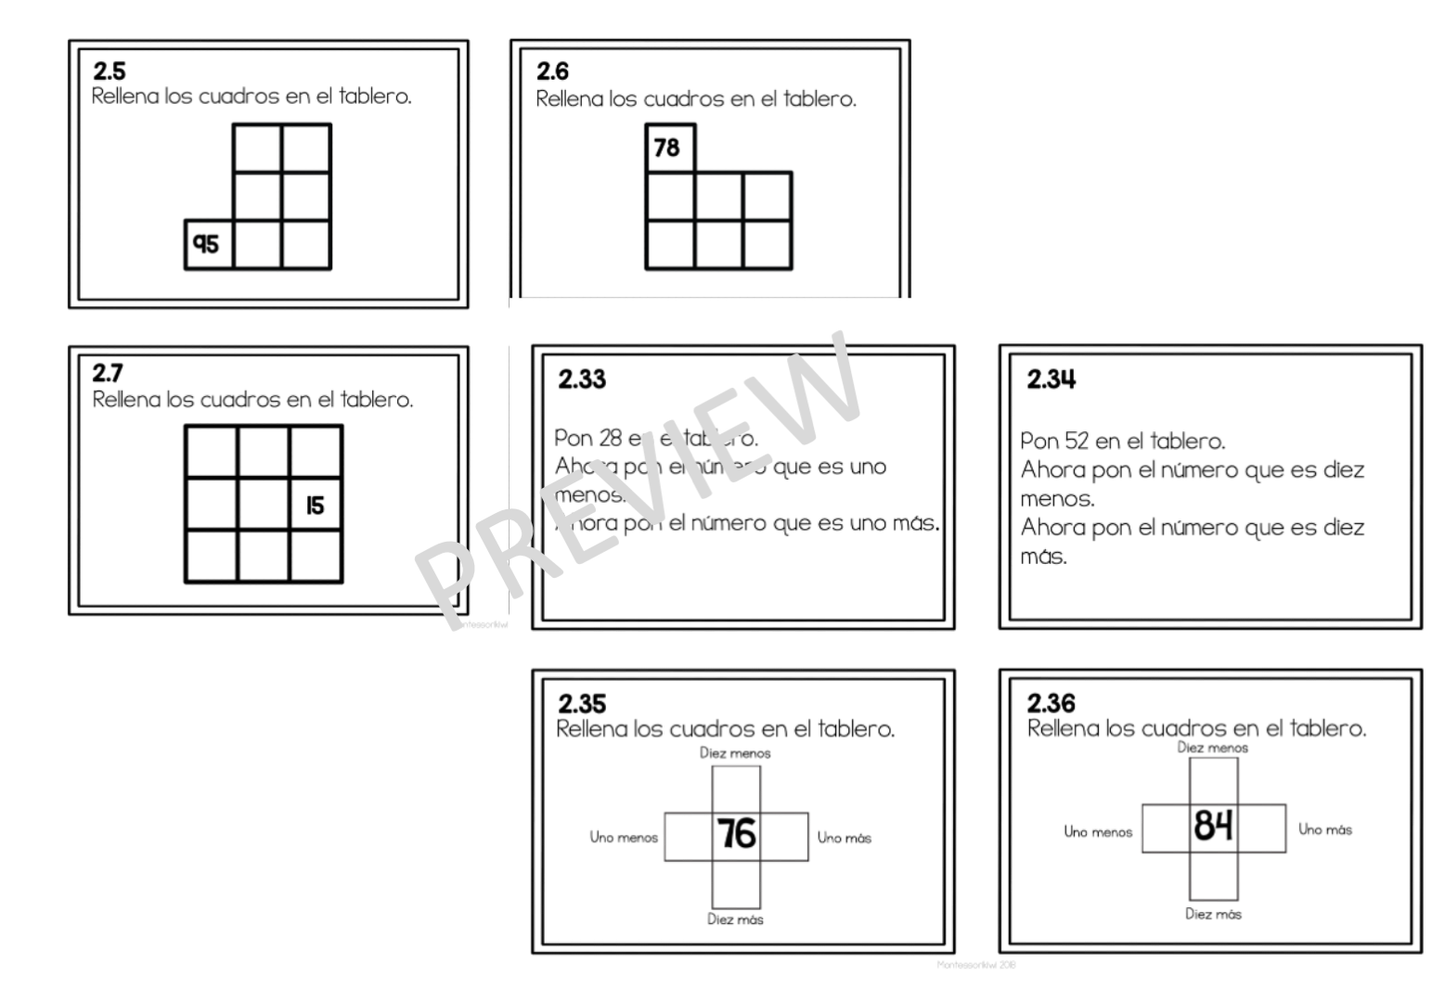 Tarjetas de trabajo para tablero 100 set 2 (Montessori Hundred board task cards set 2) - montessorikiwi